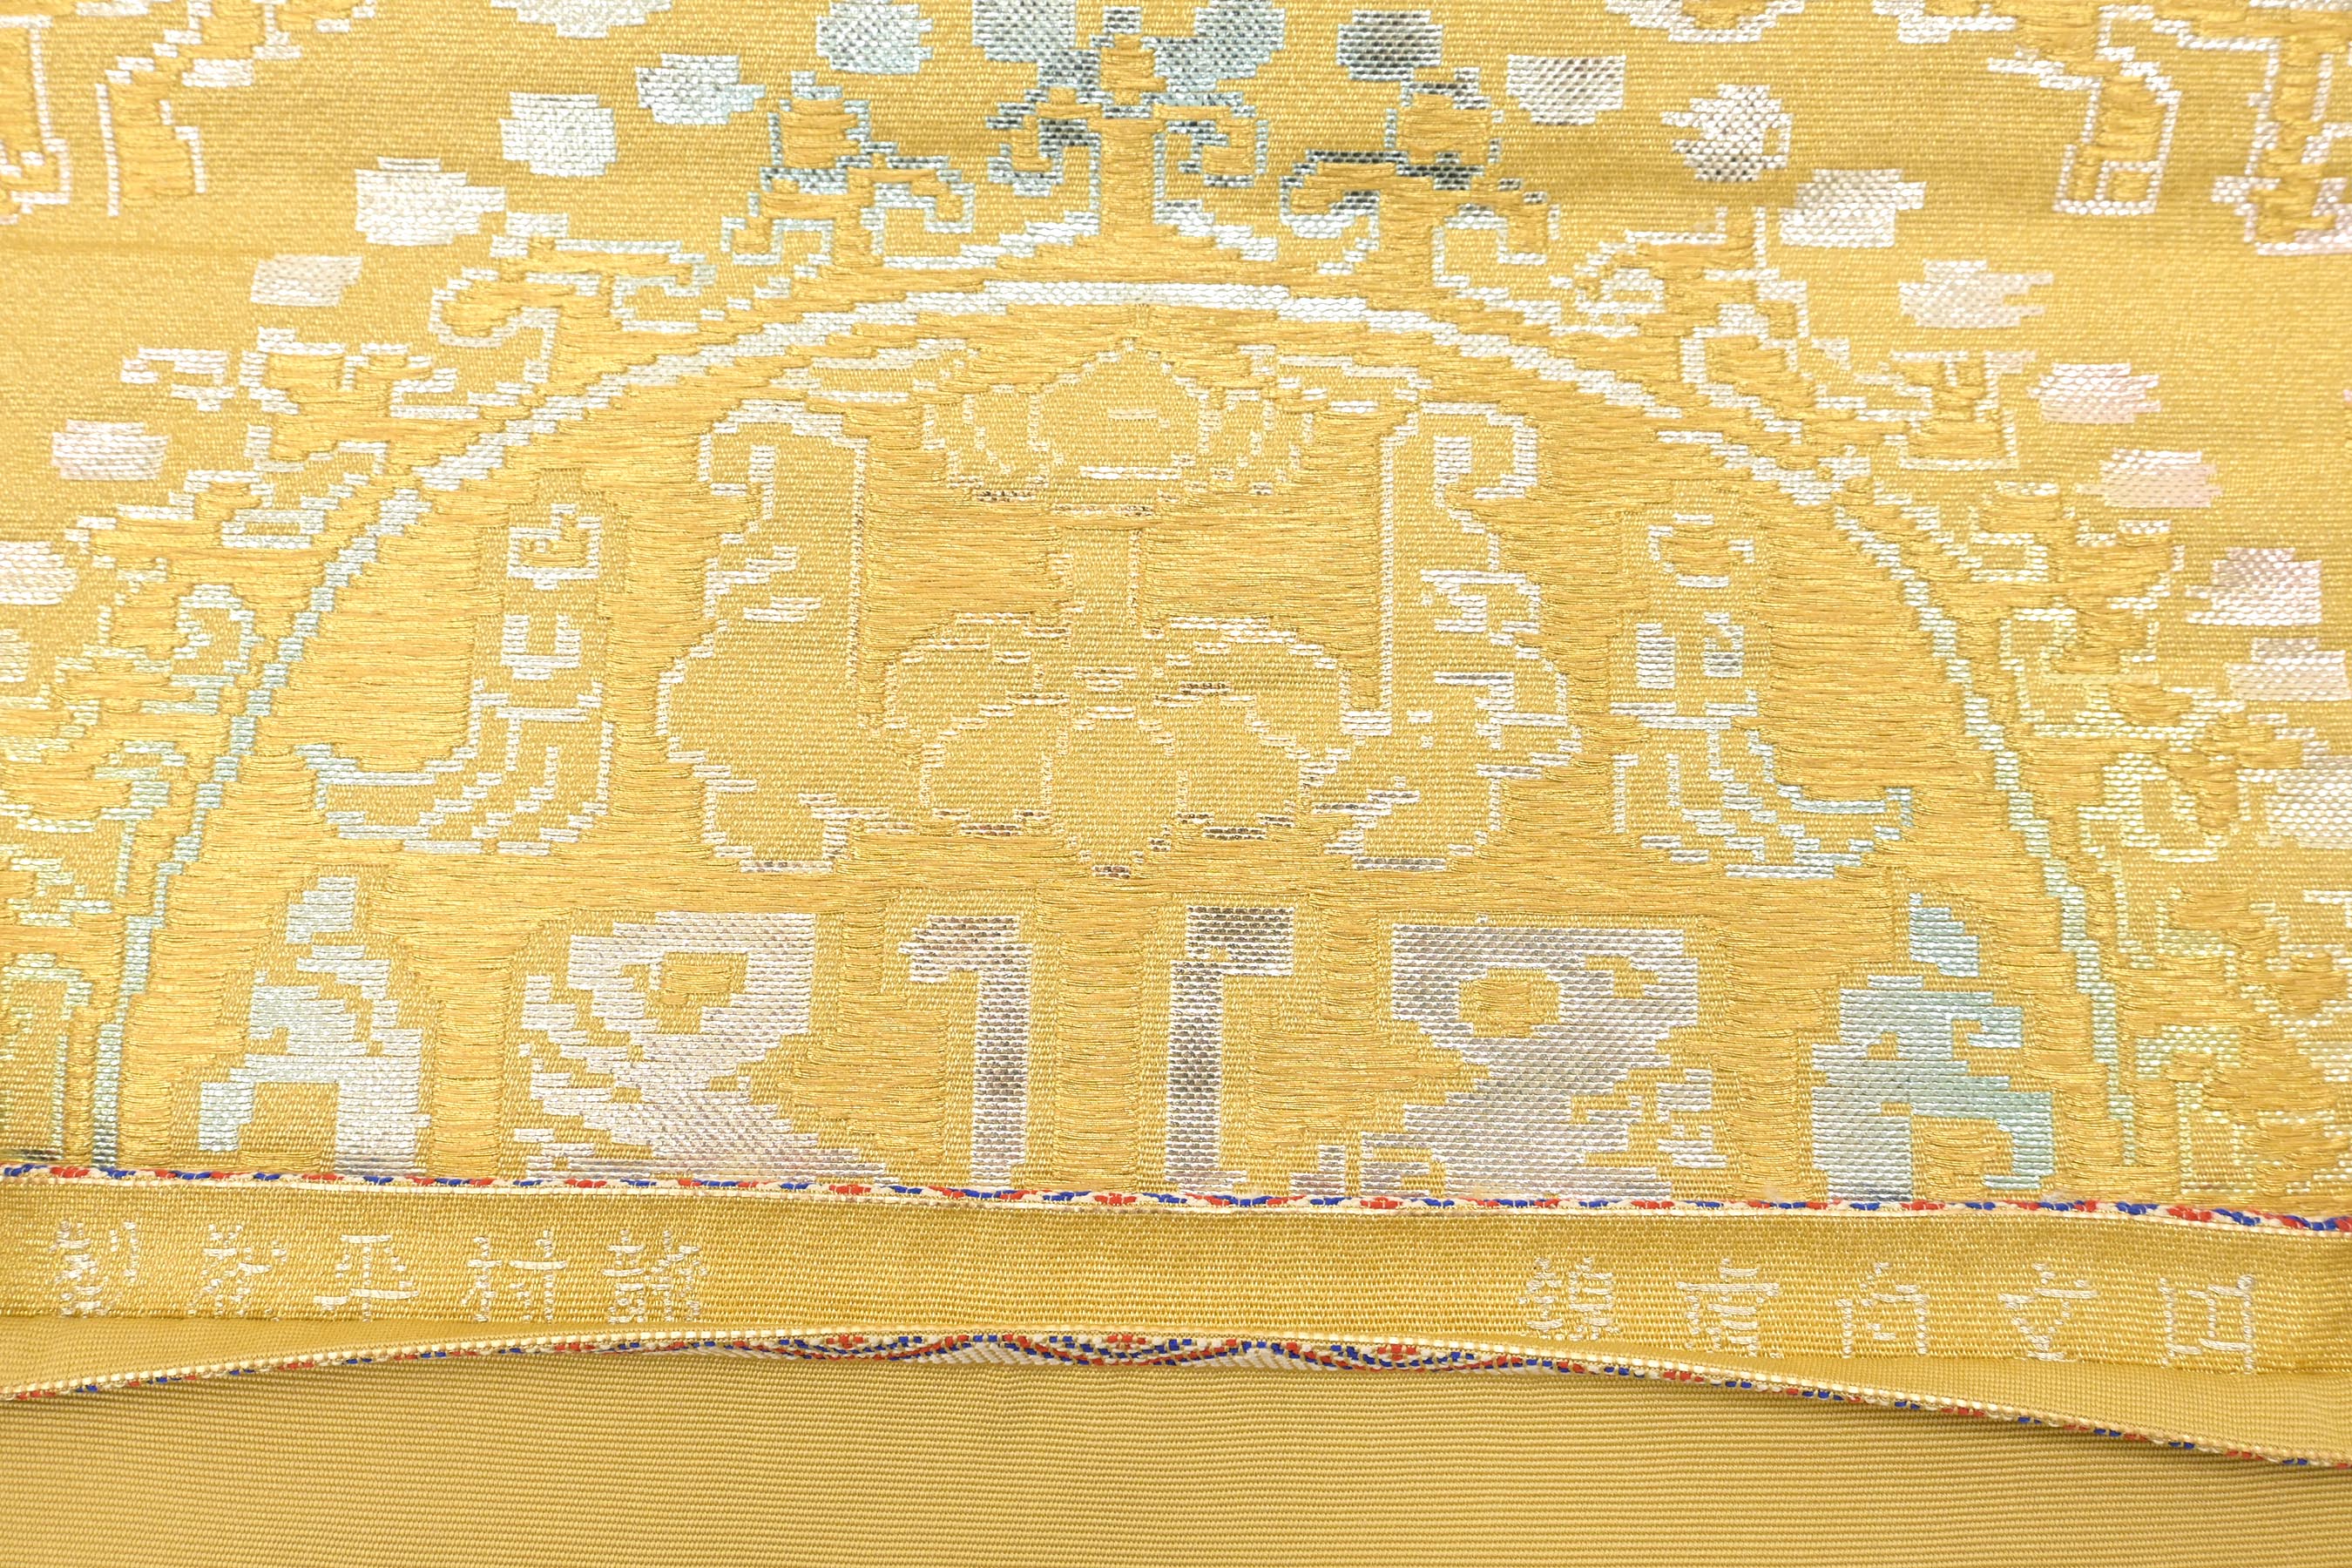 龍村平蔵製】 傑作手織り工藝本袋帯 ≪御仕立て上がり・中古美品 